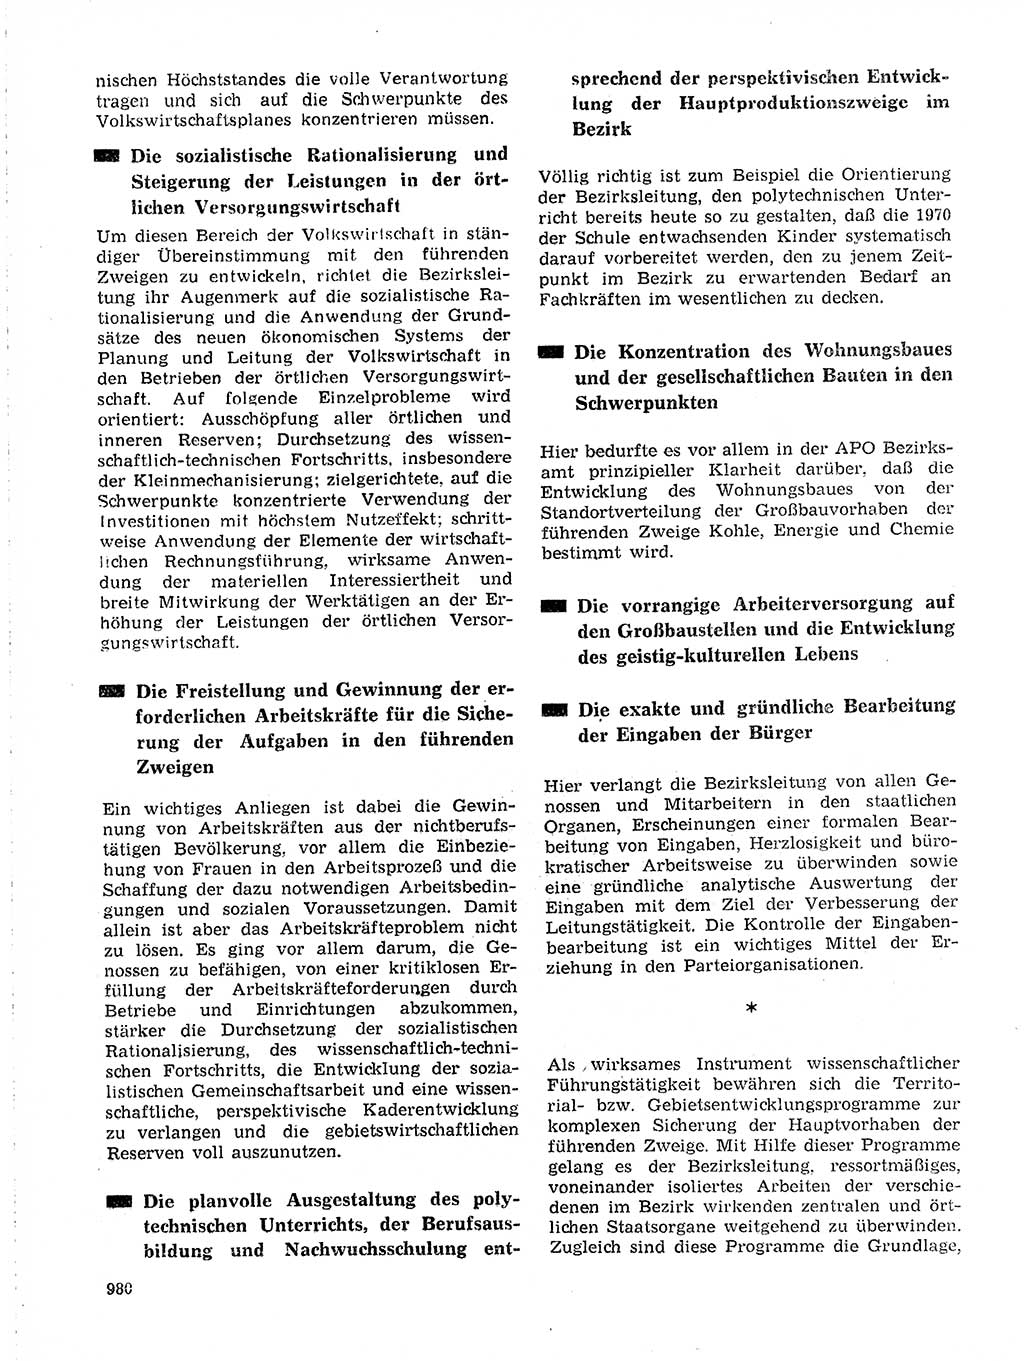 Neuer Weg (NW), Organ des Zentralkomitees (ZK) der SED (Sozialistische Einheitspartei Deutschlands) für Fragen des Parteilebens, 19. Jahrgang [Deutsche Demokratische Republik (DDR)] 1964, Seite 980 (NW ZK SED DDR 1964, S. 980)